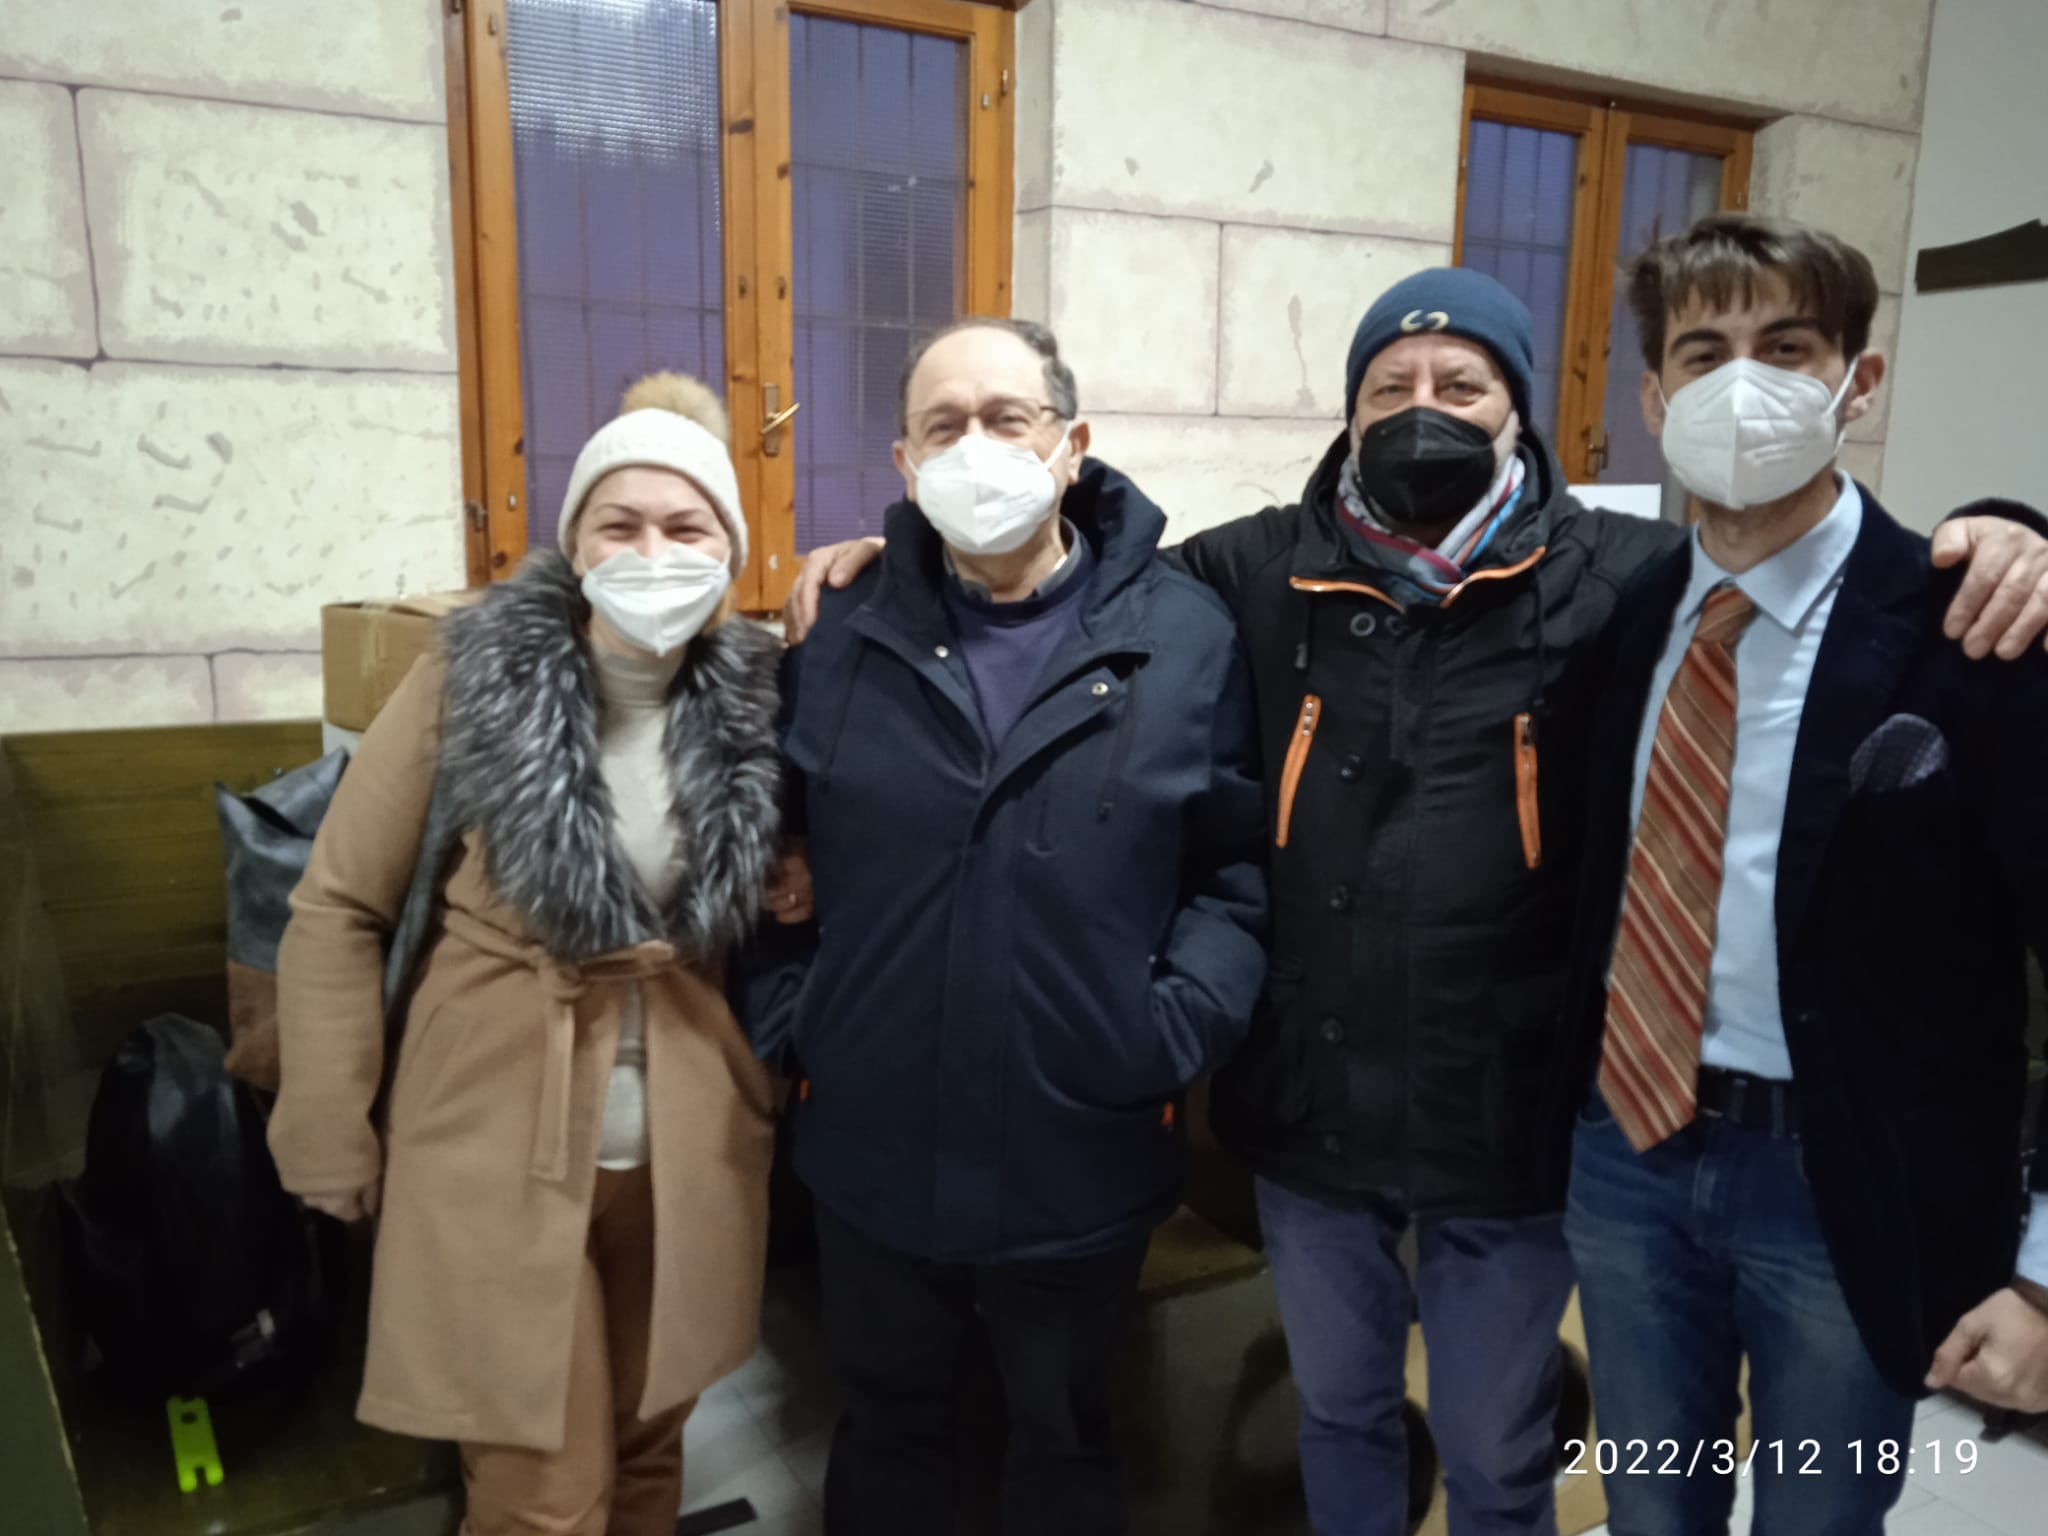 EBOLI: Aiuti ai profughi – La parrocchia di San Bartolomeo e l’associazione Eboli nel Futuro danno il loro contributo